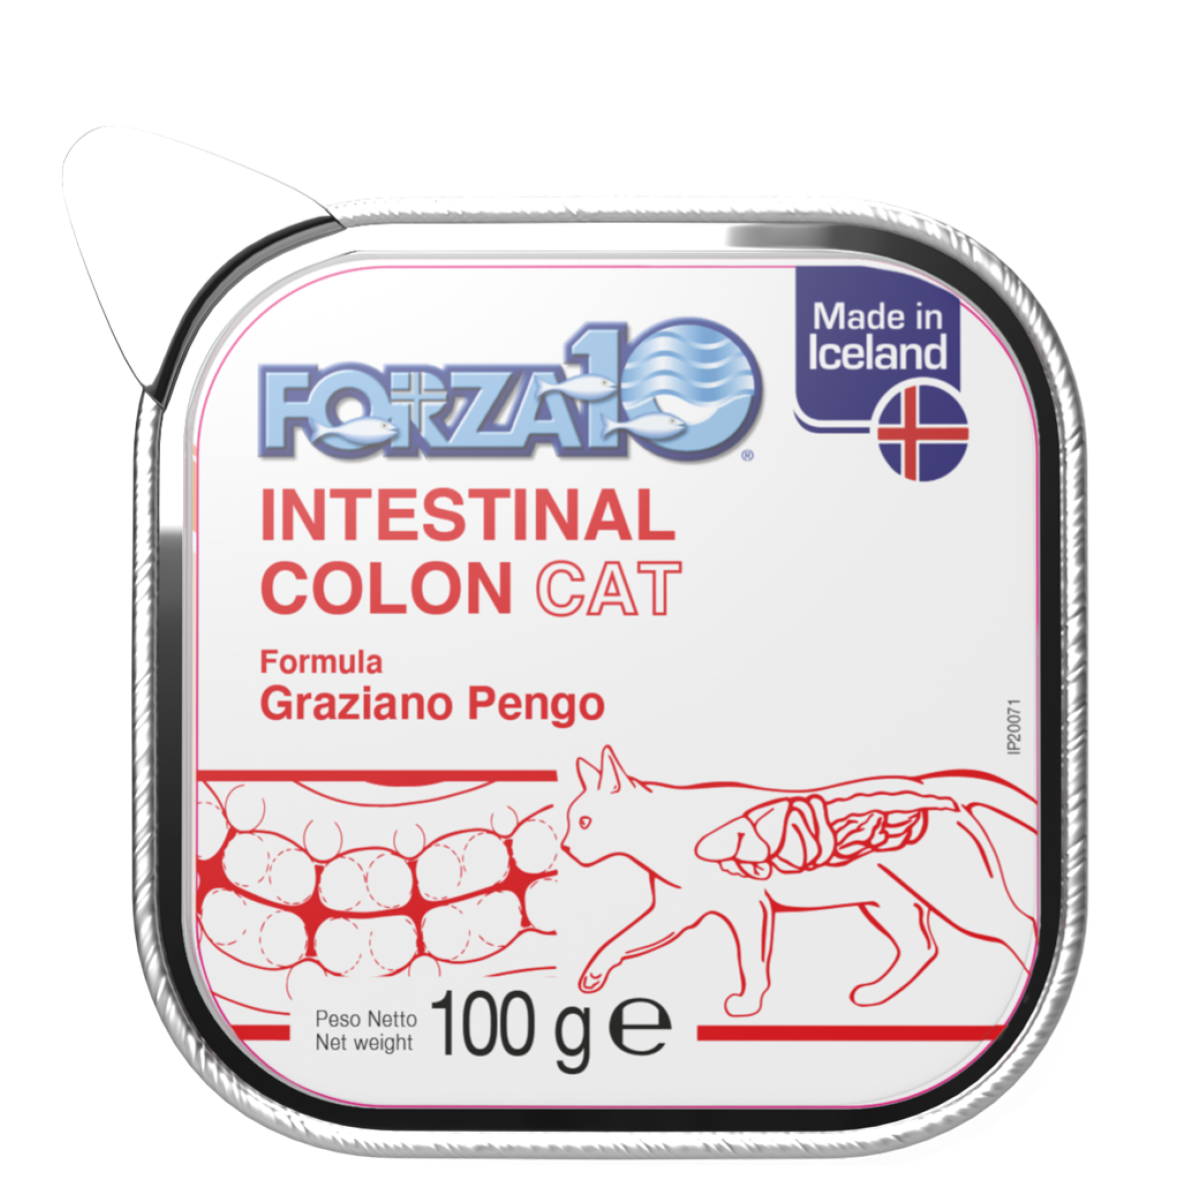 Forza10 Intestinal Colon ir pilnvērtīga, sabalansēta mitrā diētiskā barība kaķiem, kas paredzēta, lai samazinātu uzsūkšanās traucējumus zarnās un kompensētu sliktu gremošanu.